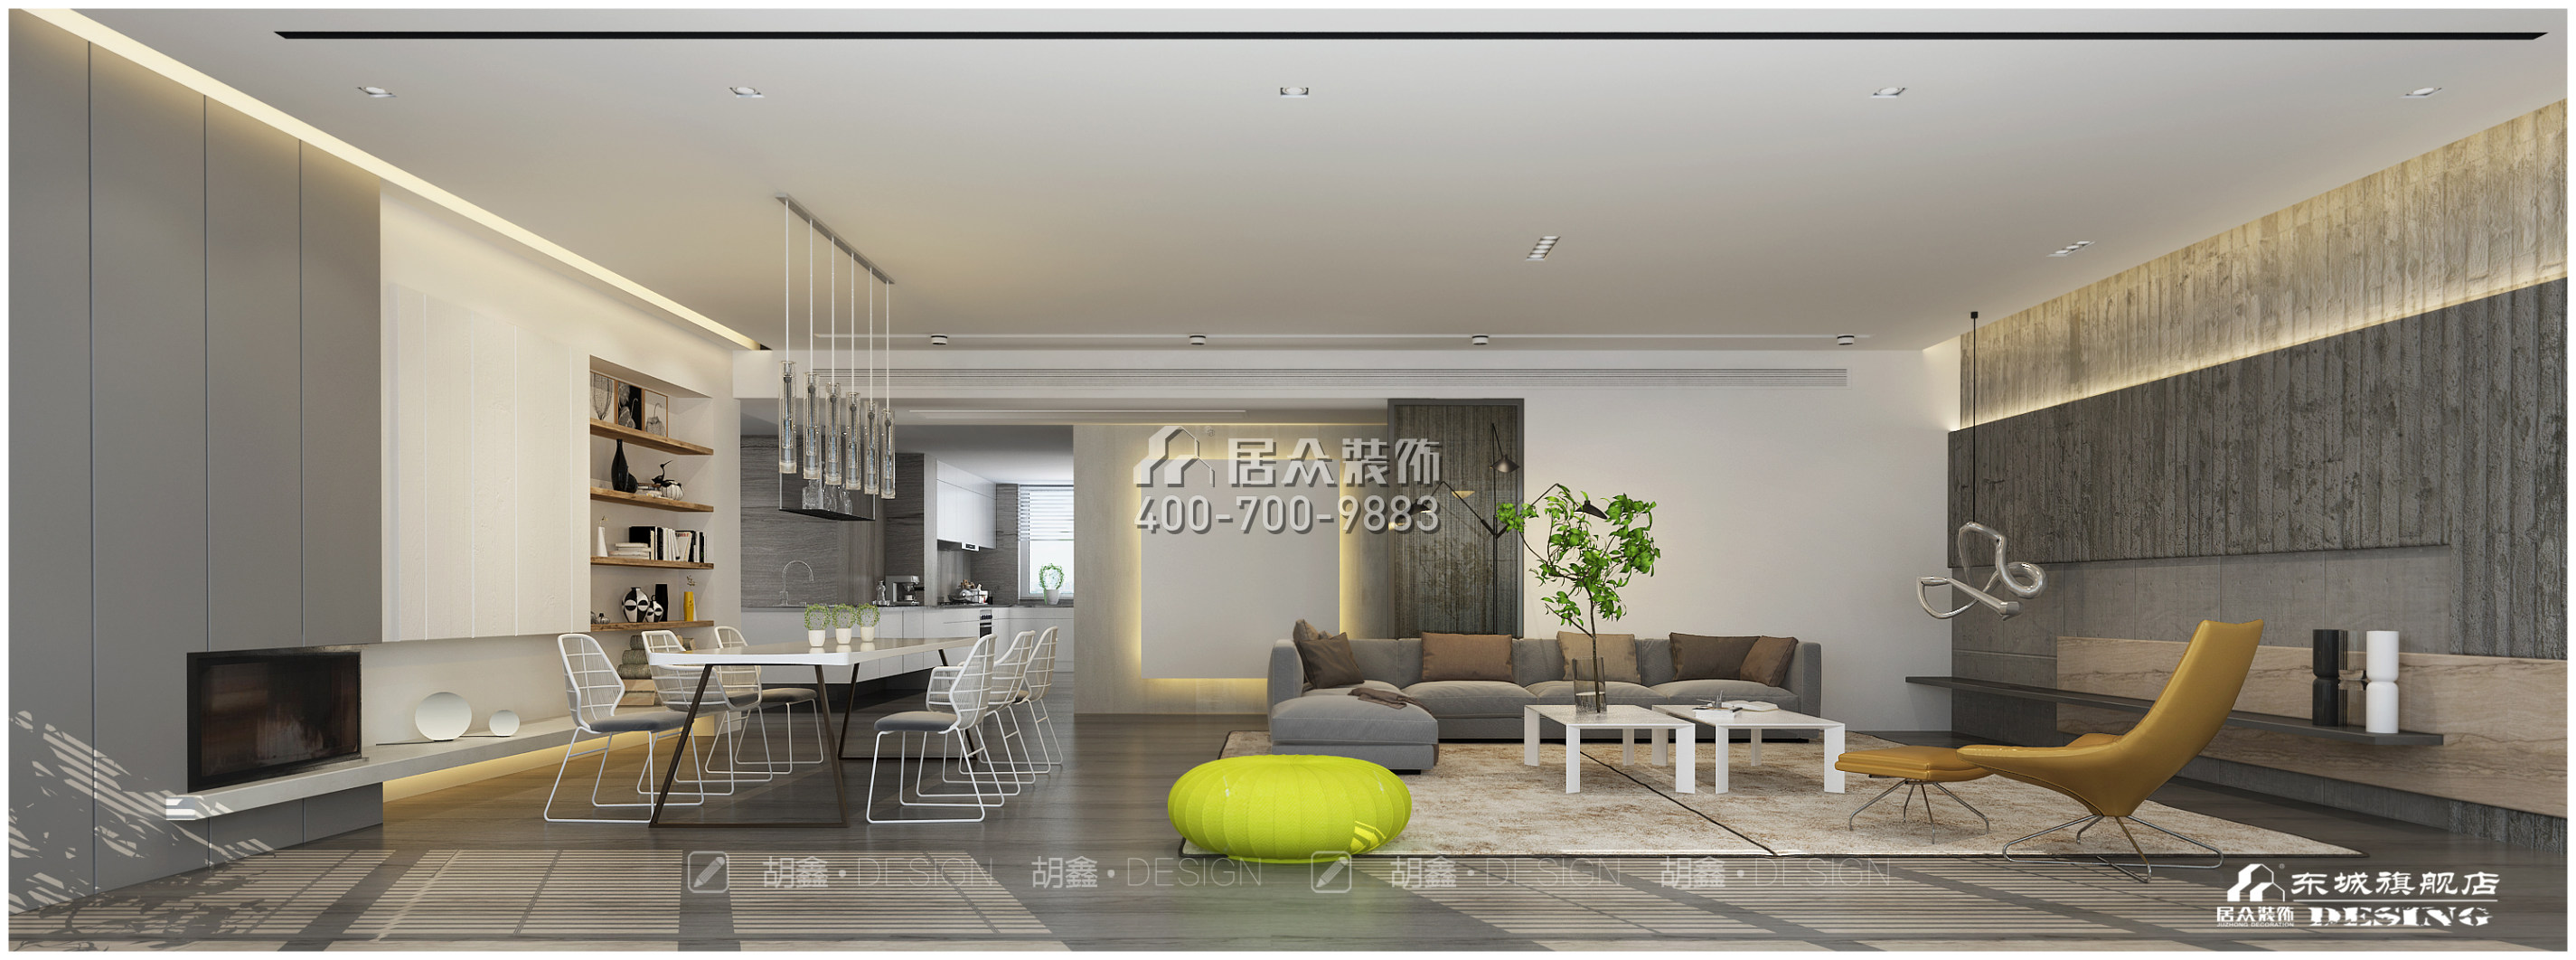 保利國際廣場320平方米現代簡約風格平層戶型客廳裝修效果圖